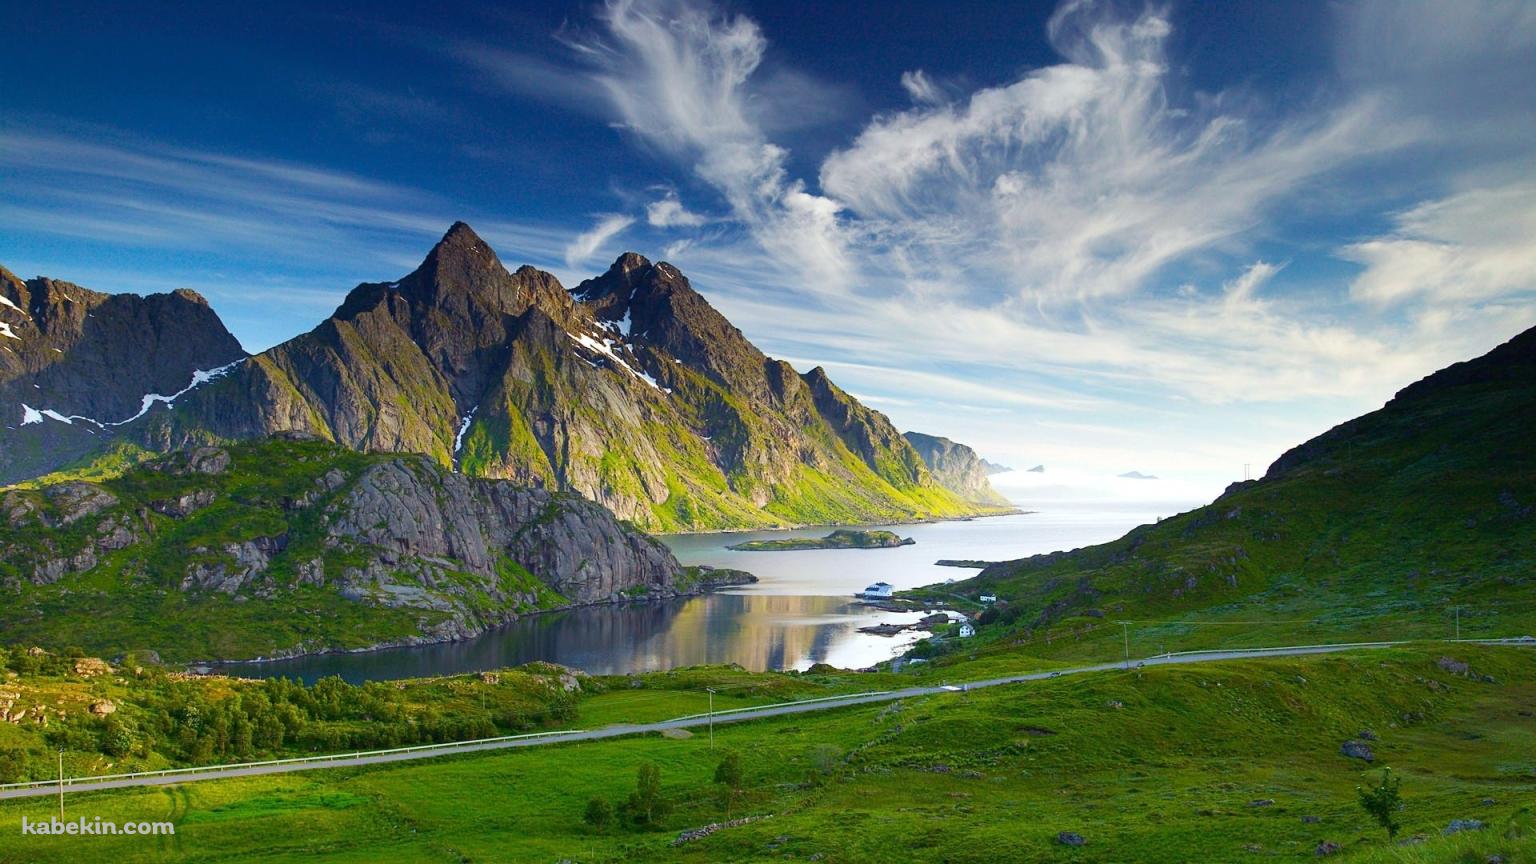 ノルウェーの美麗な景色の壁紙(1536px x 864px) 高画質 PC・デスクトップ用